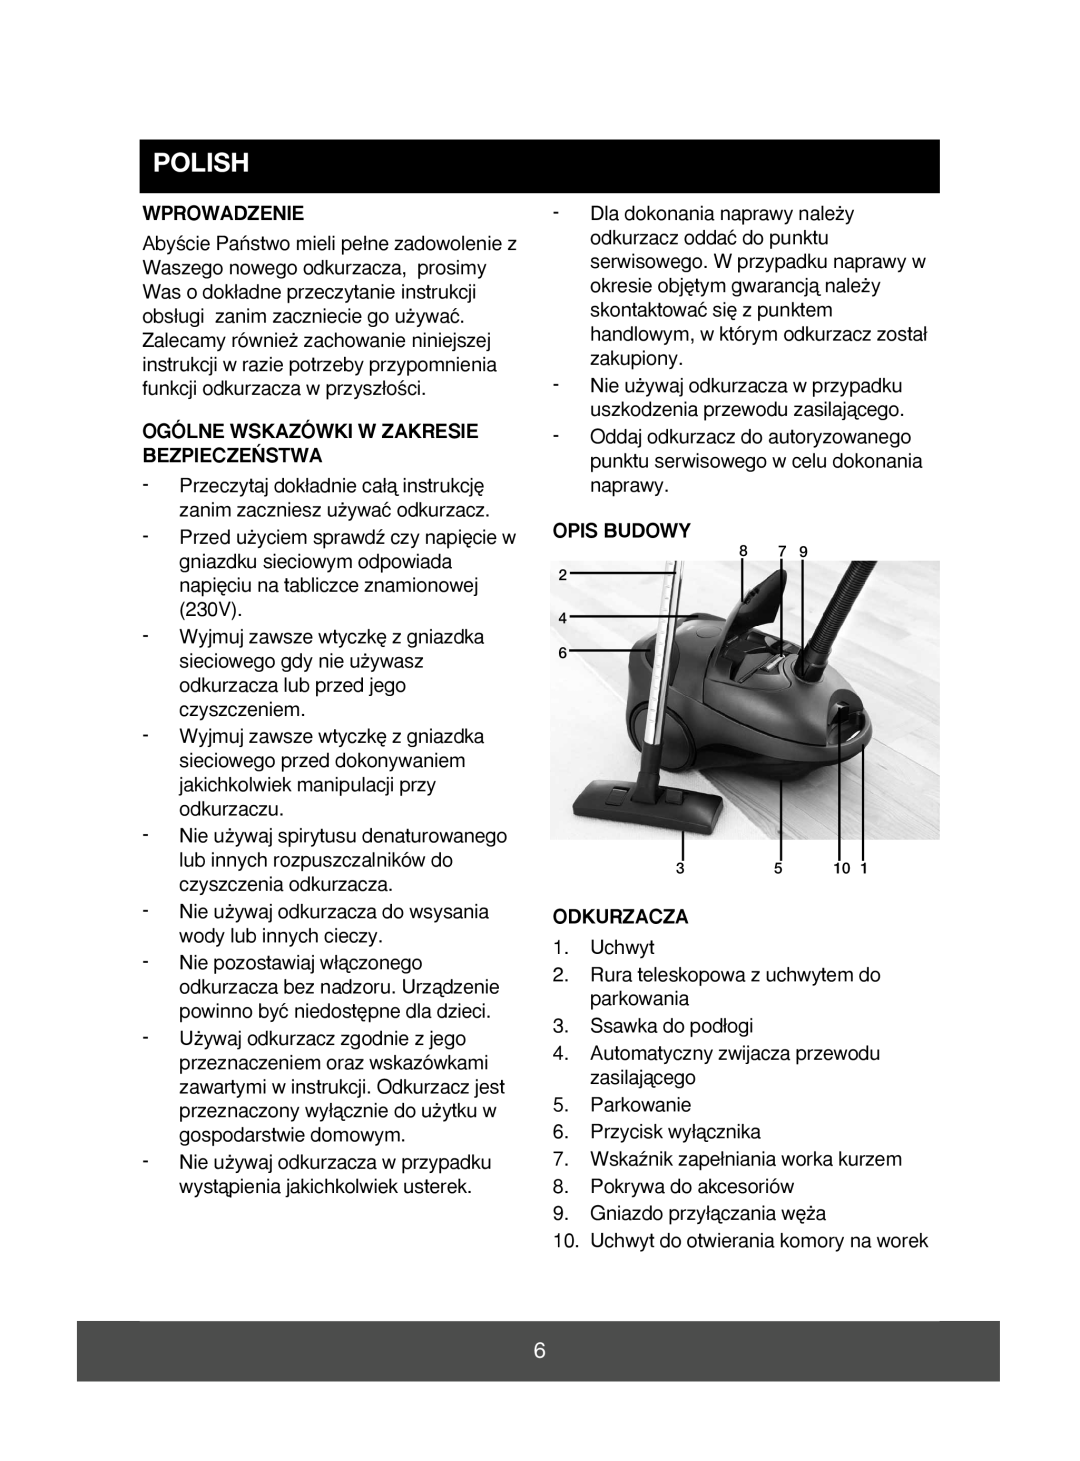 Electric-Spin 640090 manual Polish, Wprowadzenie, Ogólne Wskazówki W Zakresie Bezpiecze¡Stwa, Opis Budowy, Odkurzacza 